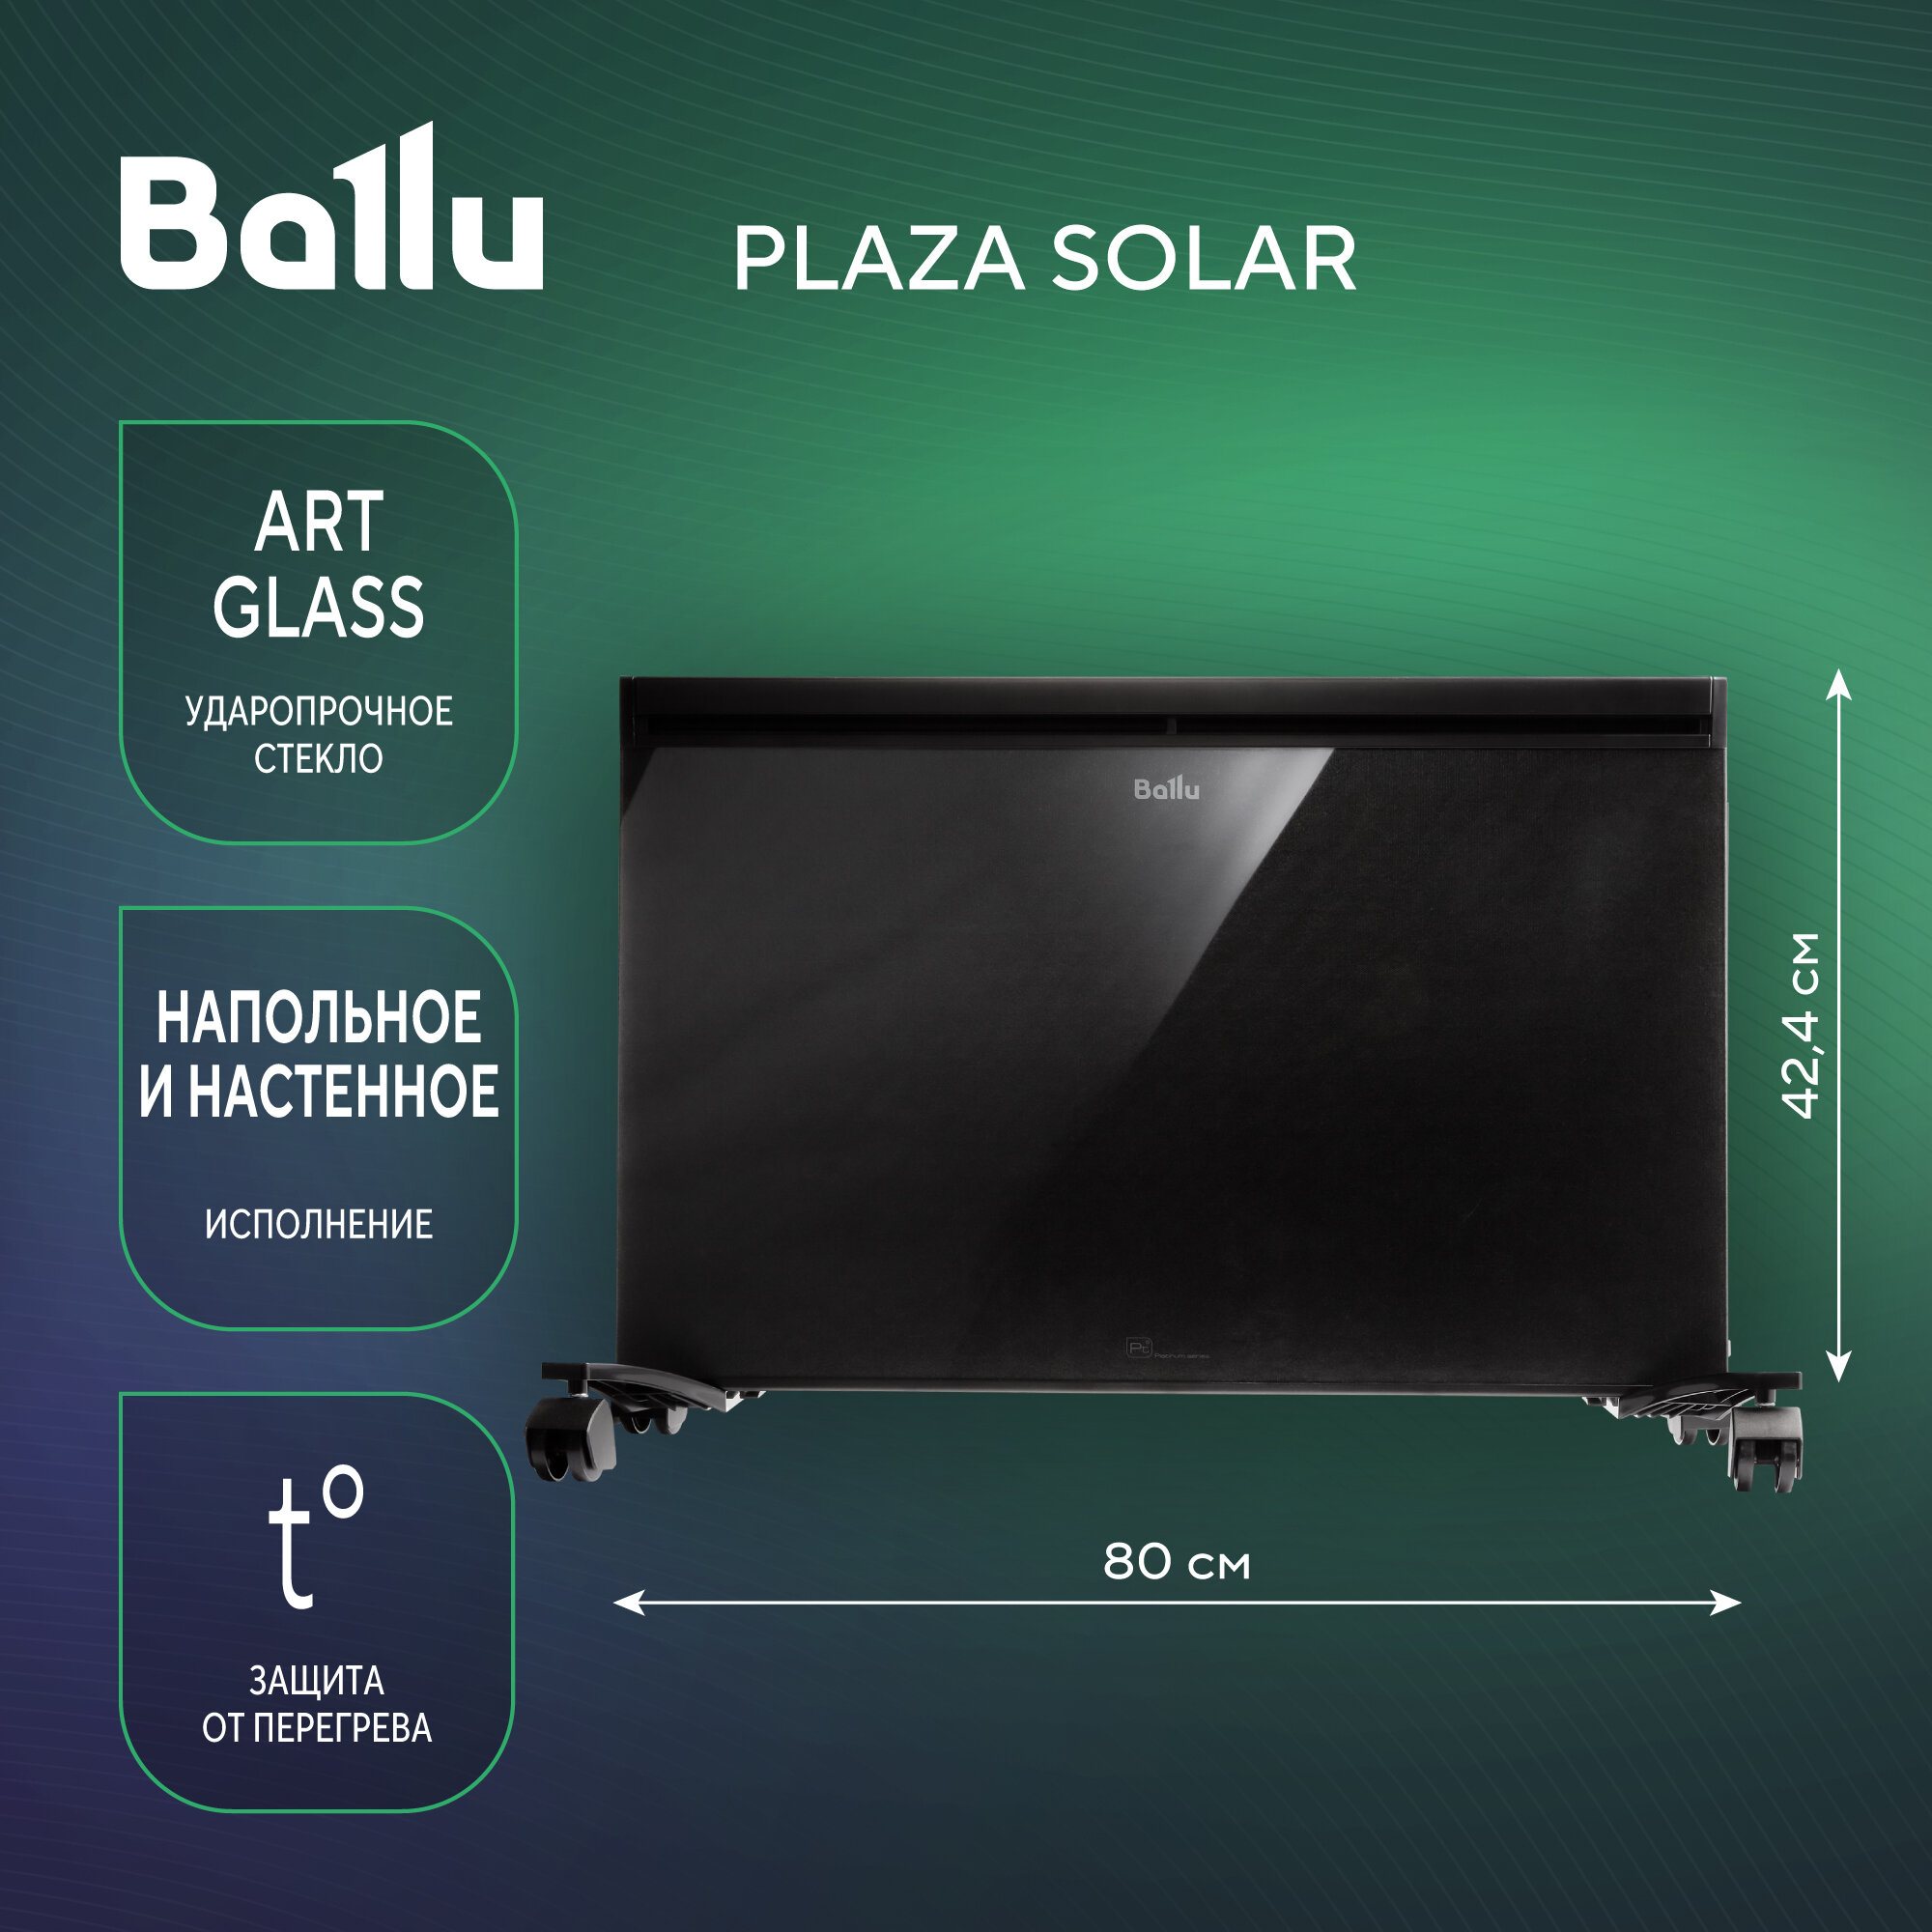 Обогреватель конвективно-инфракрасный Ballu Plaza Solar BIHP/S-2500